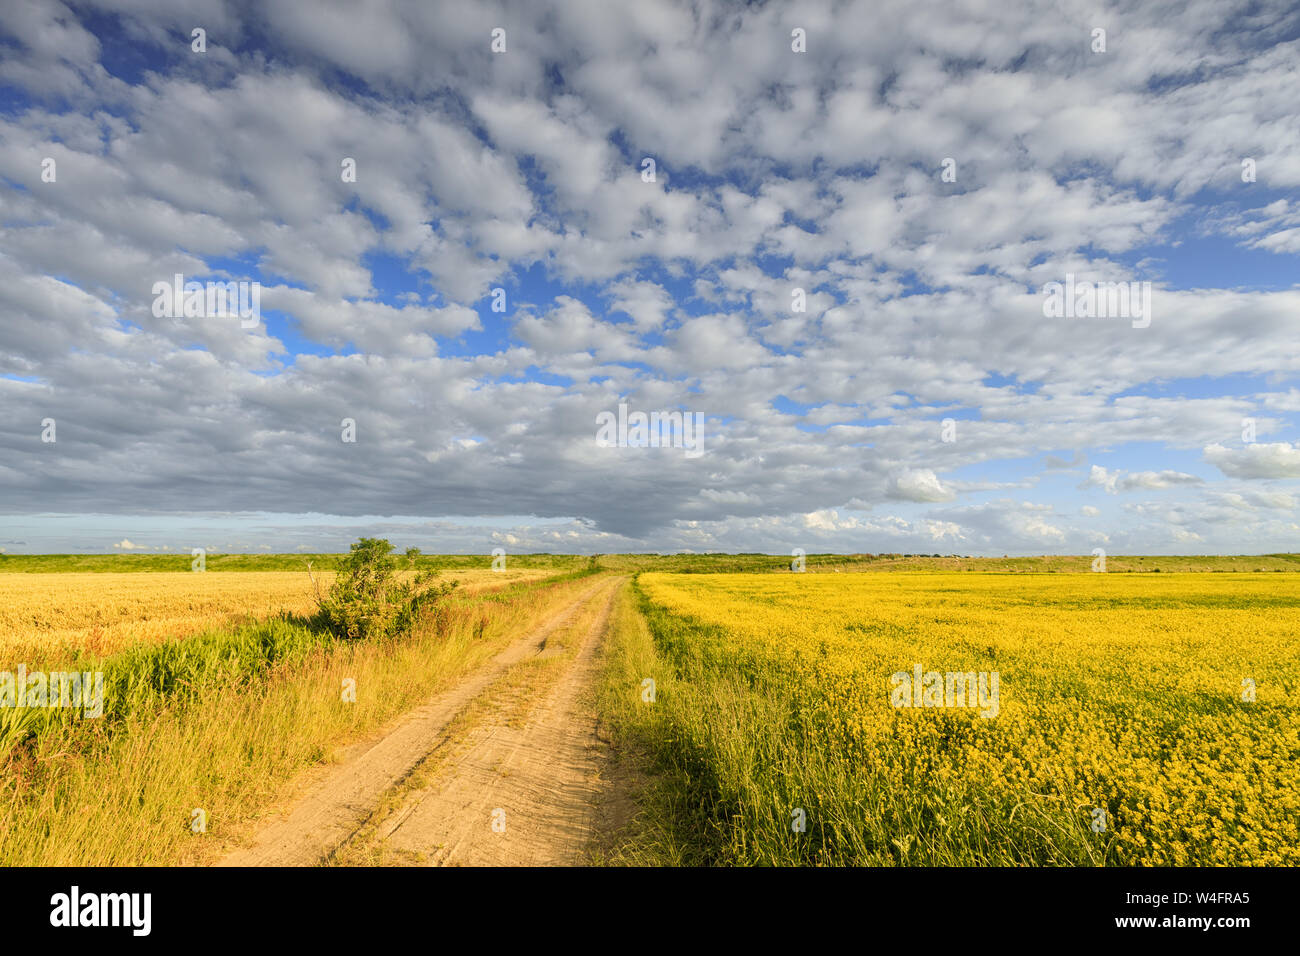 Un paysage rural en été avec un ciel bleu et nuages et une route de campagne à travers les champs en été - Groningen, Pays-Bas Banque D'Images